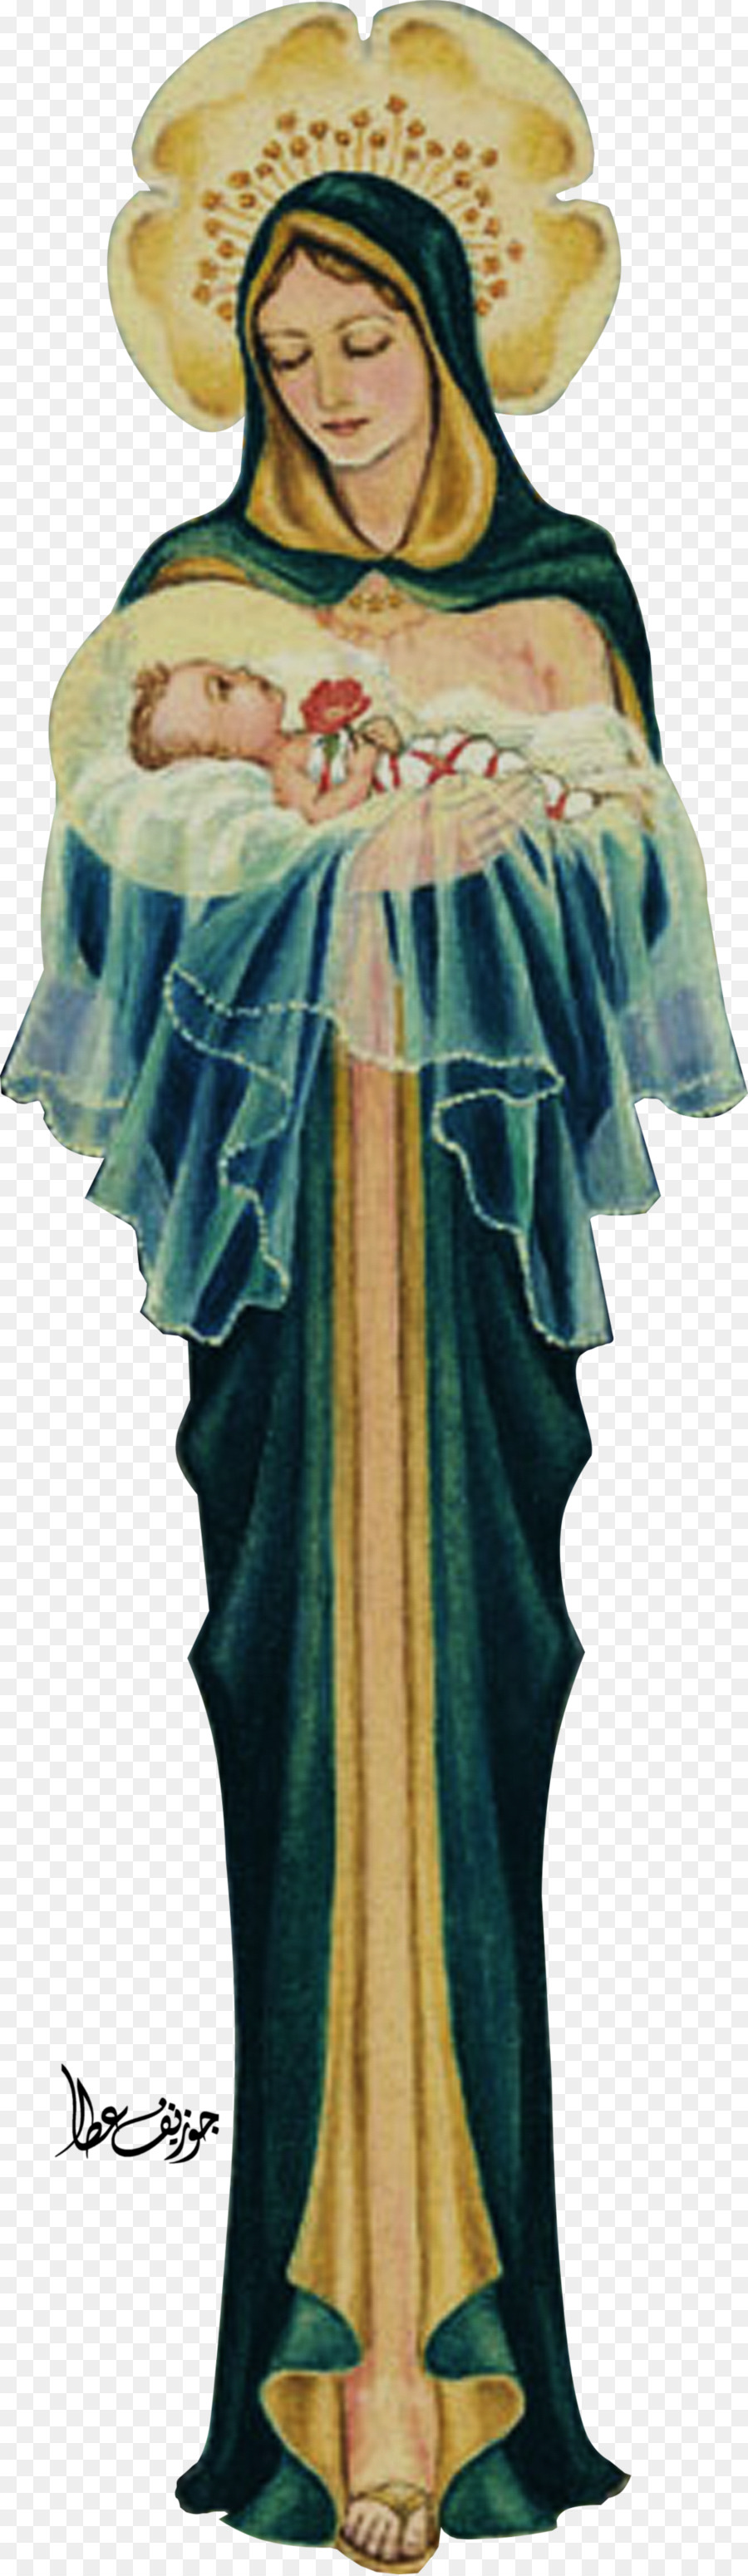 Thiết kế trang phục Rosa Bên Angel M - chúa giêsu, đức mẹ mary